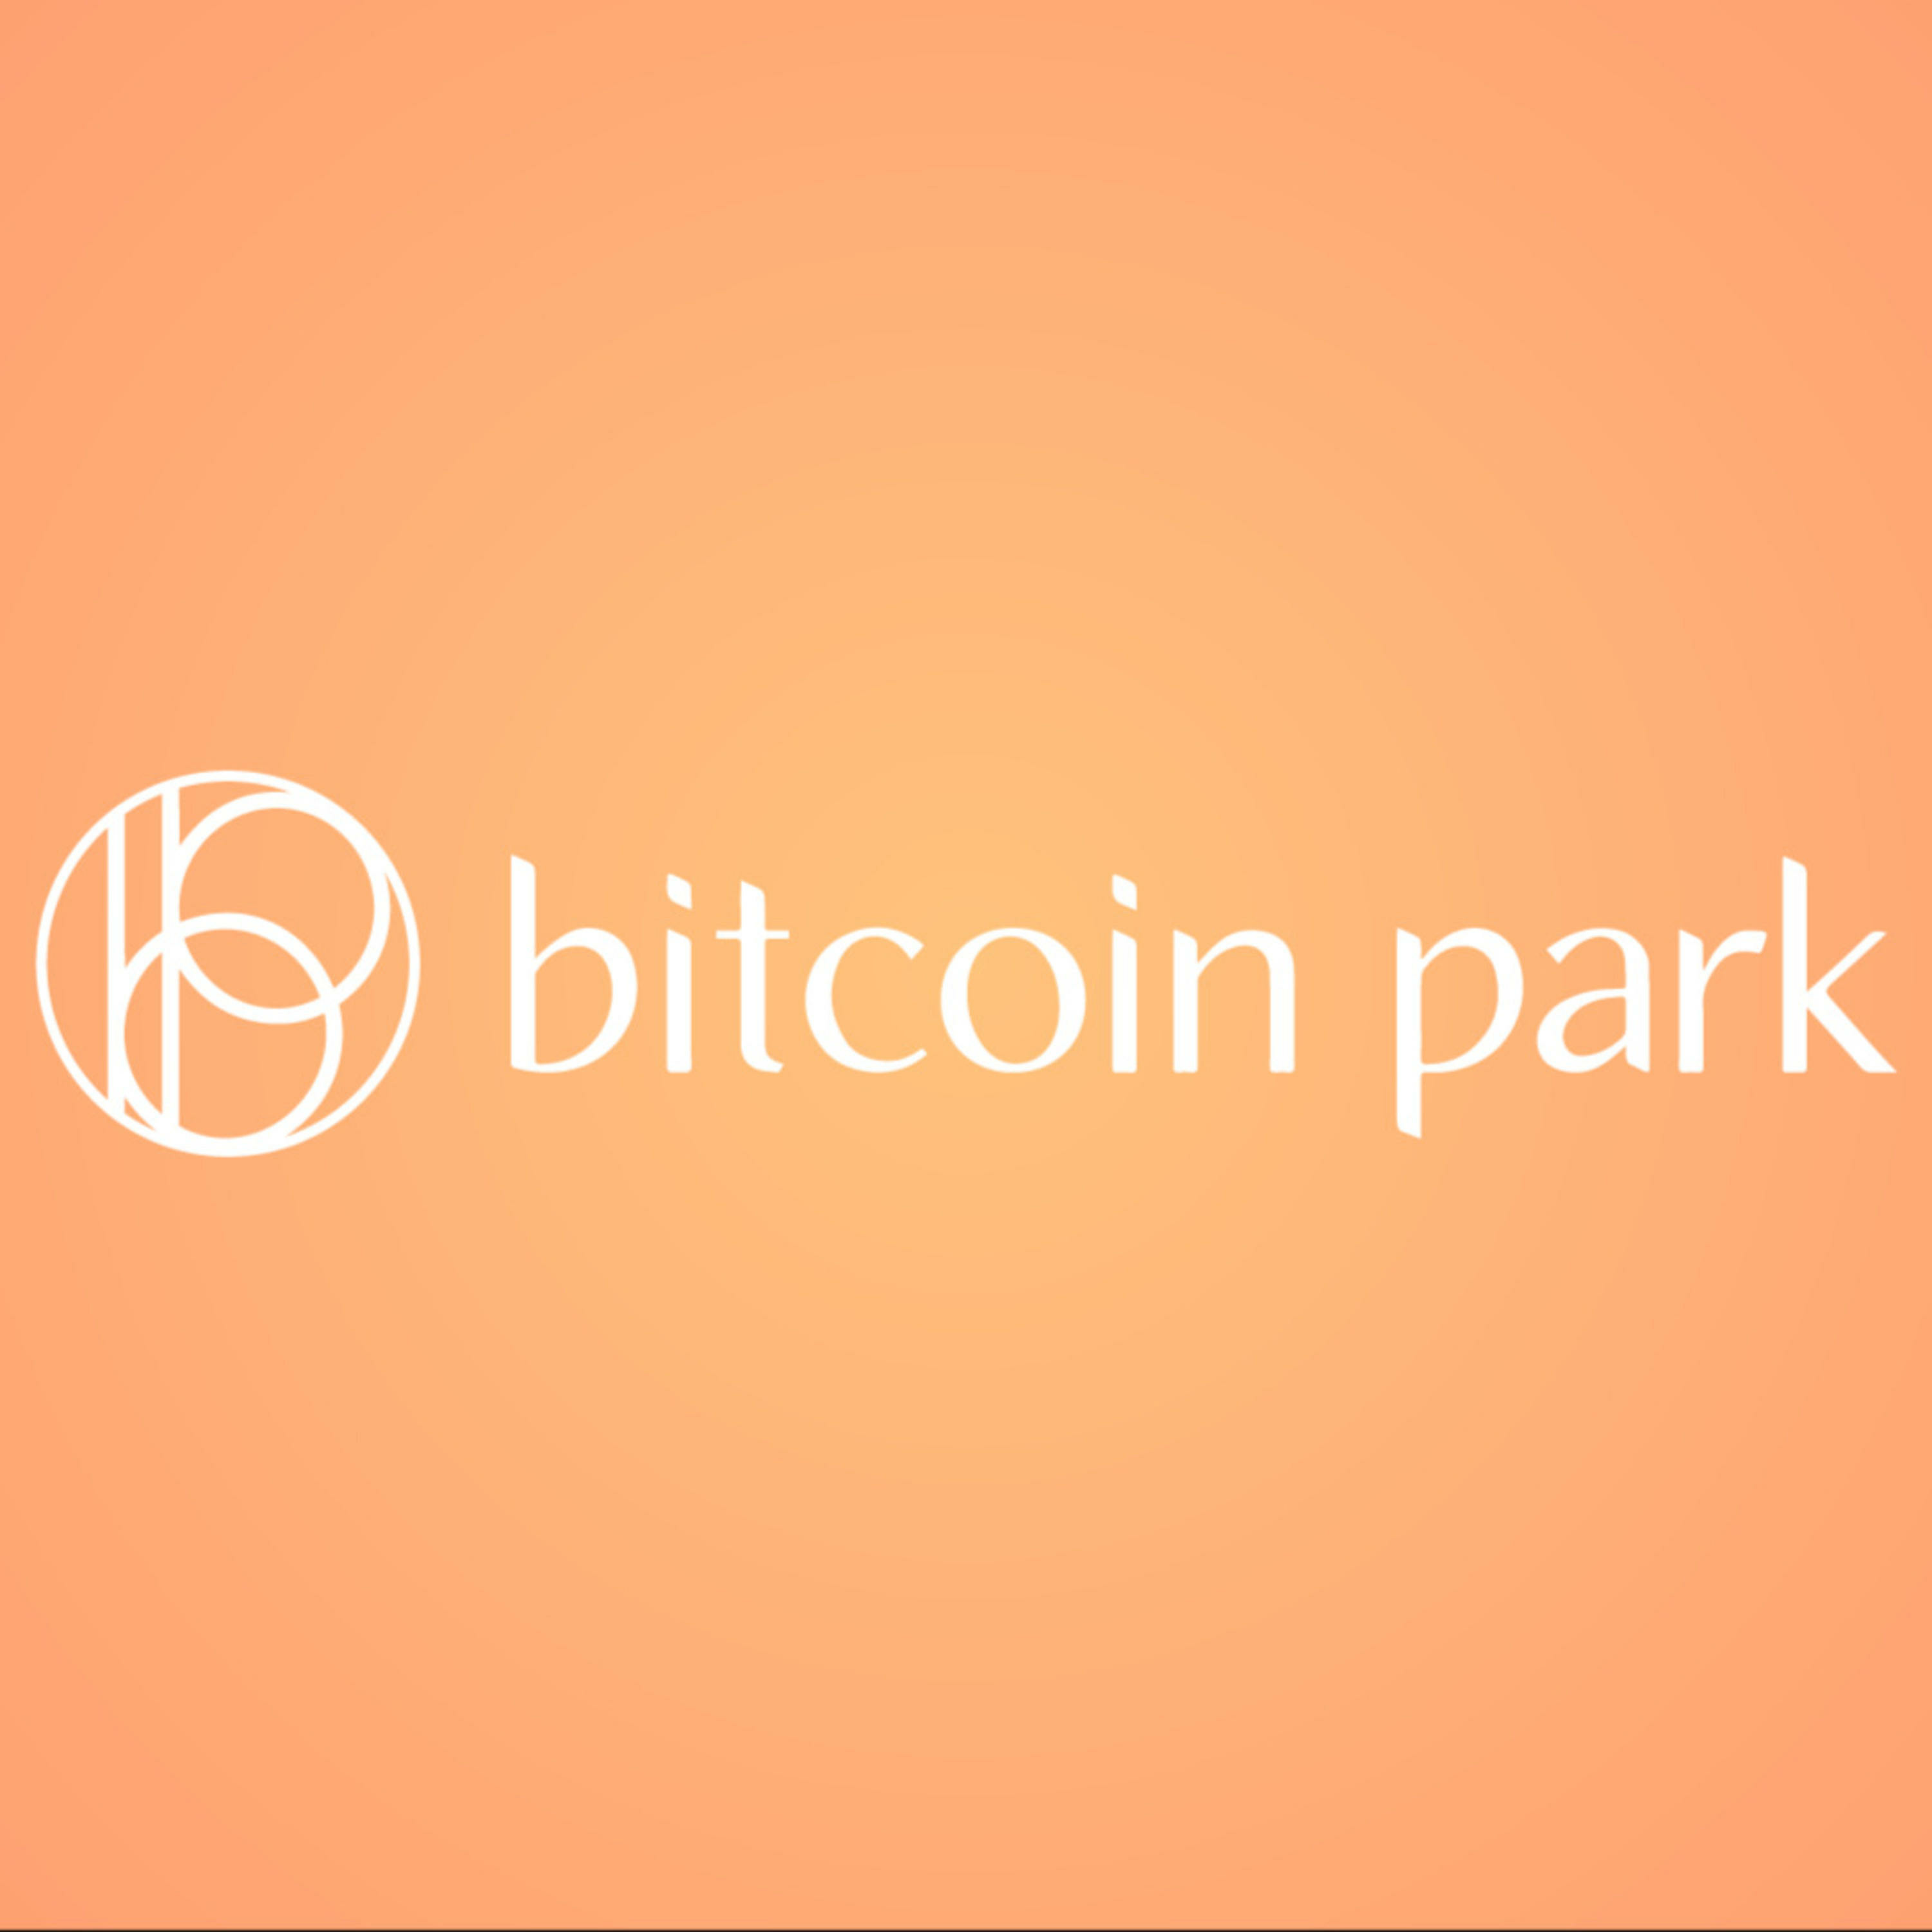 Bitcoin Park